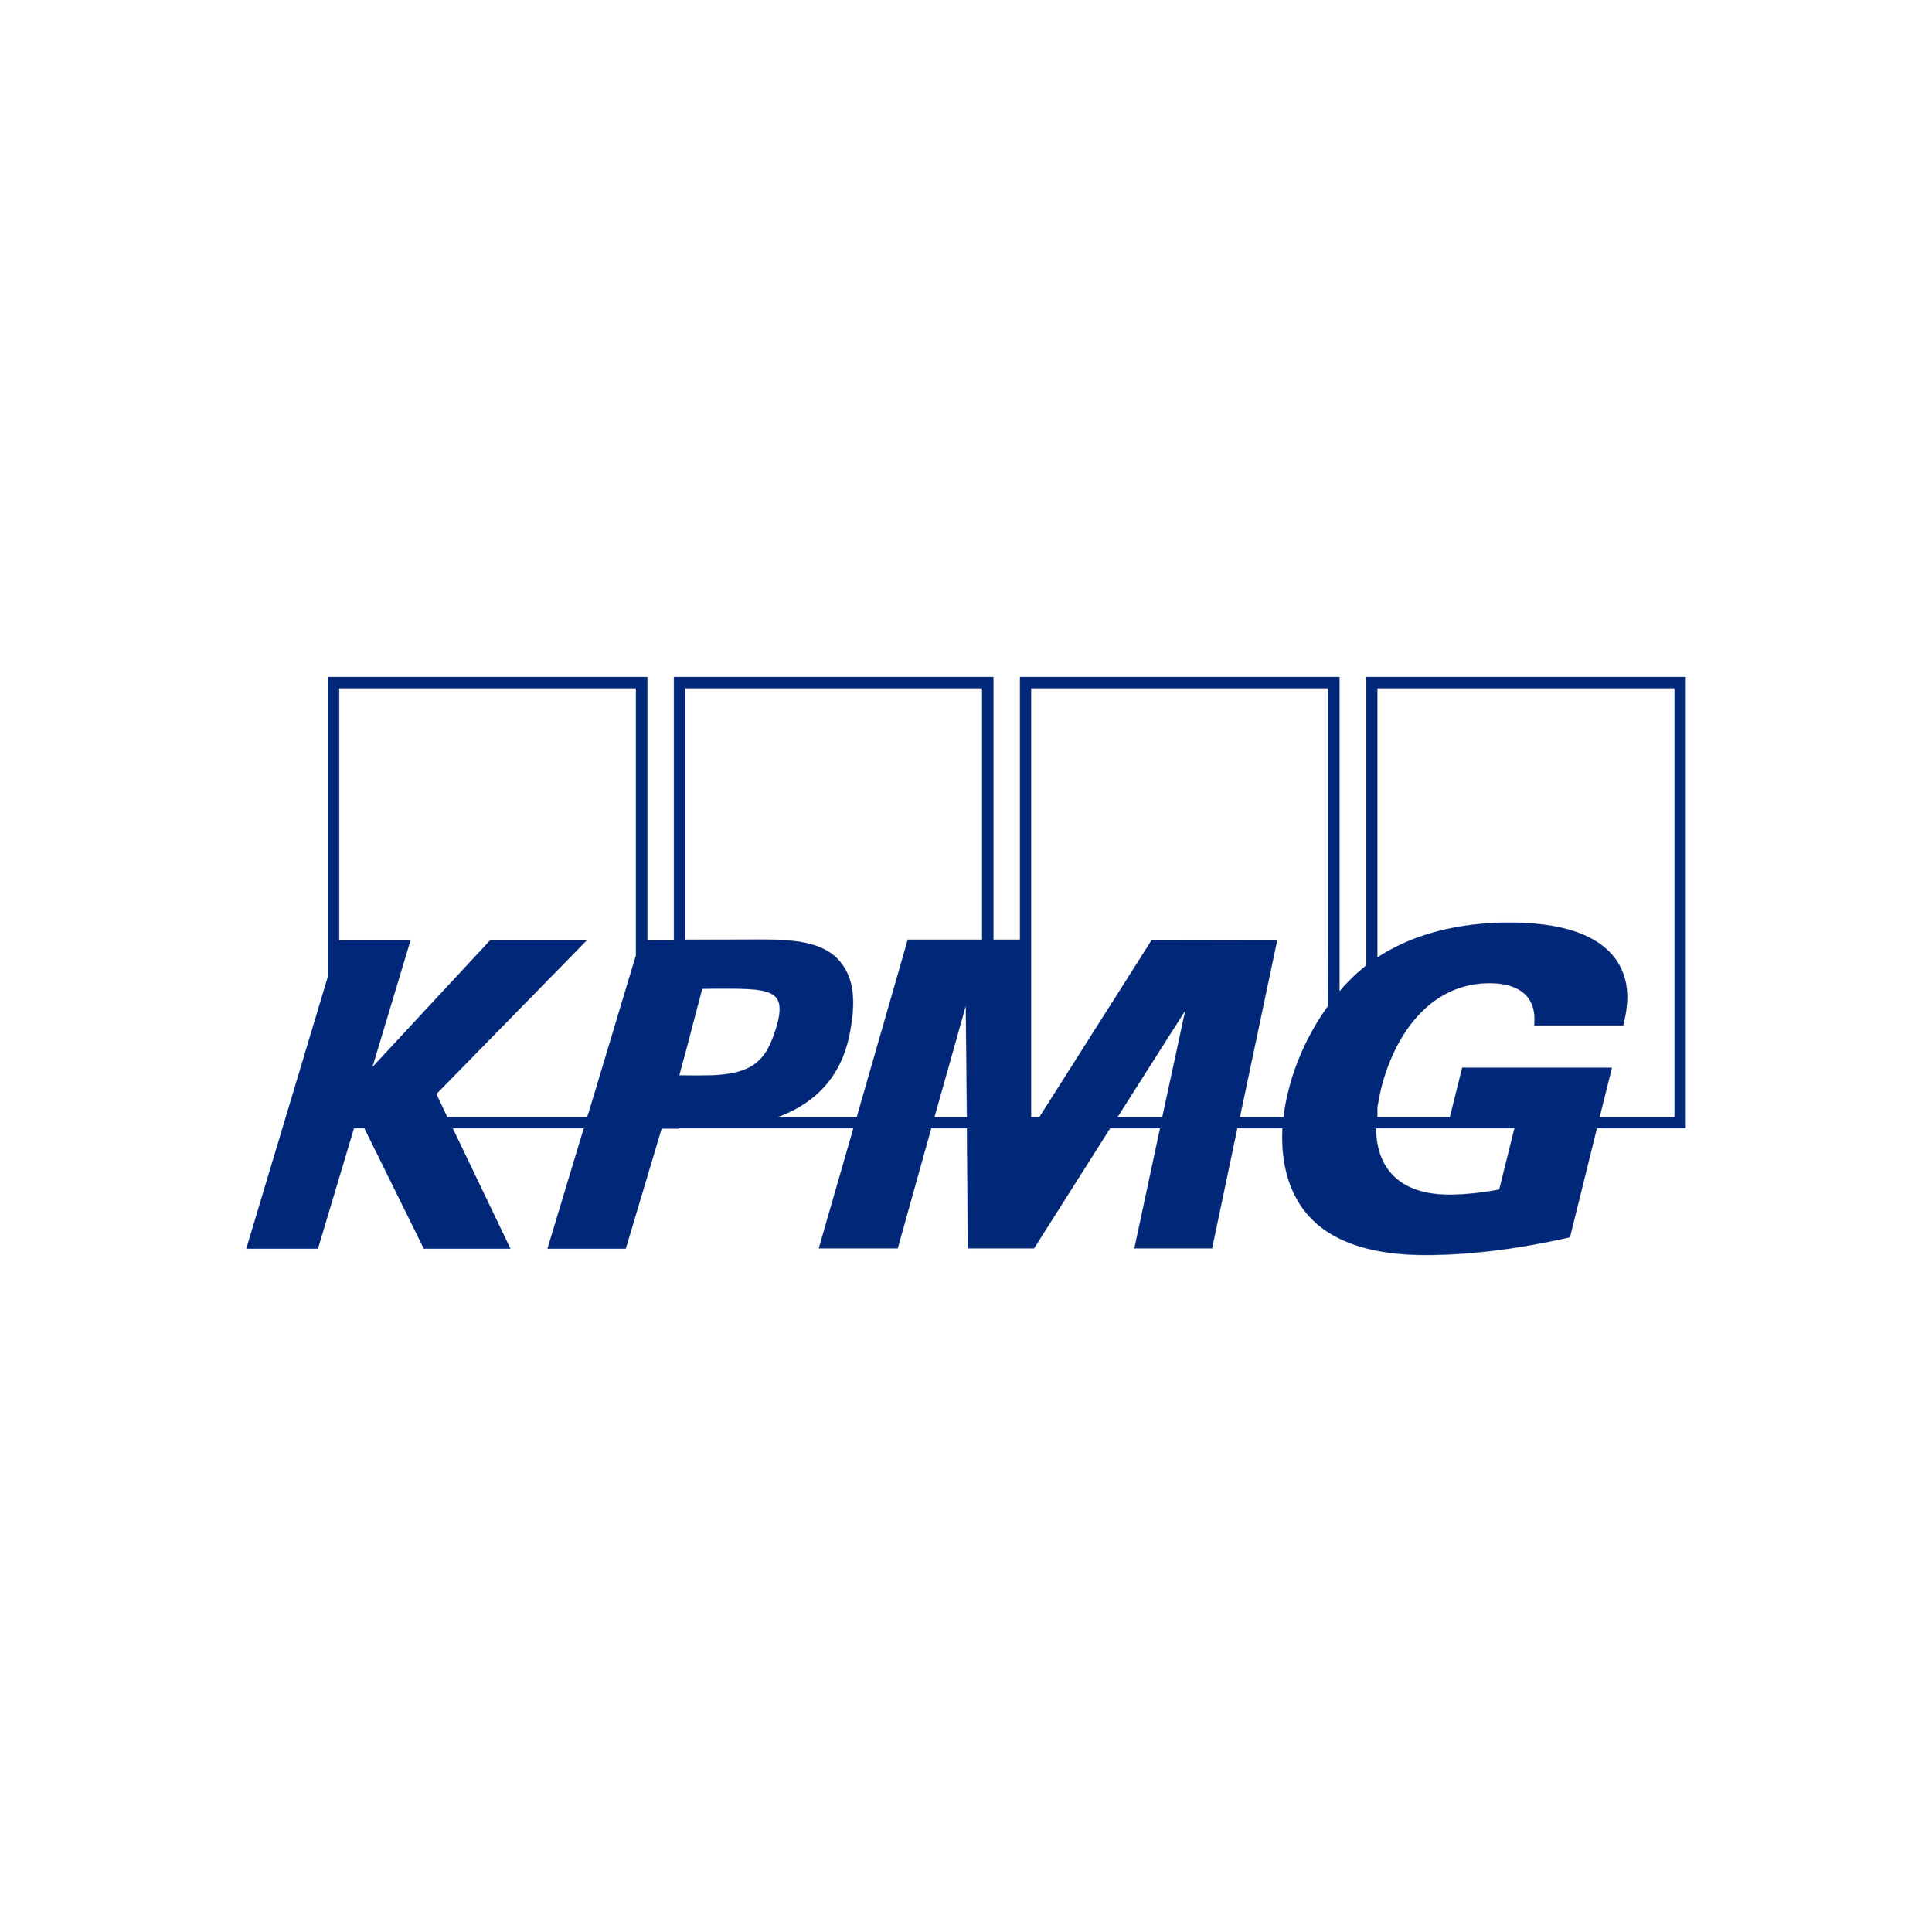 kpmg-logo-0.png